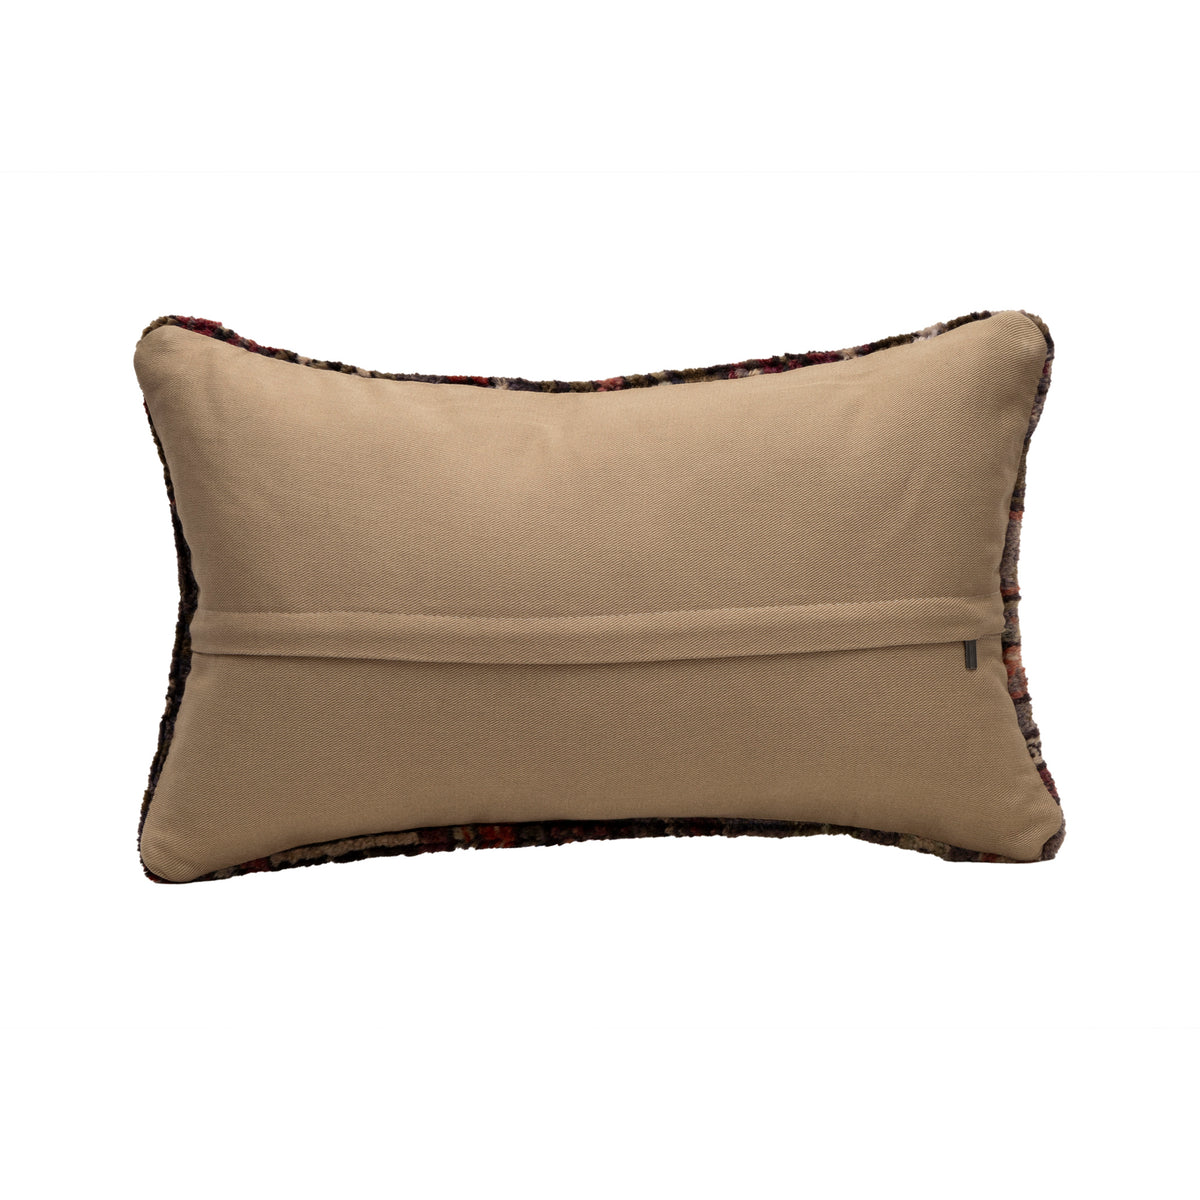 Neutral Handmade Rug Pillow Case 16" x 24"